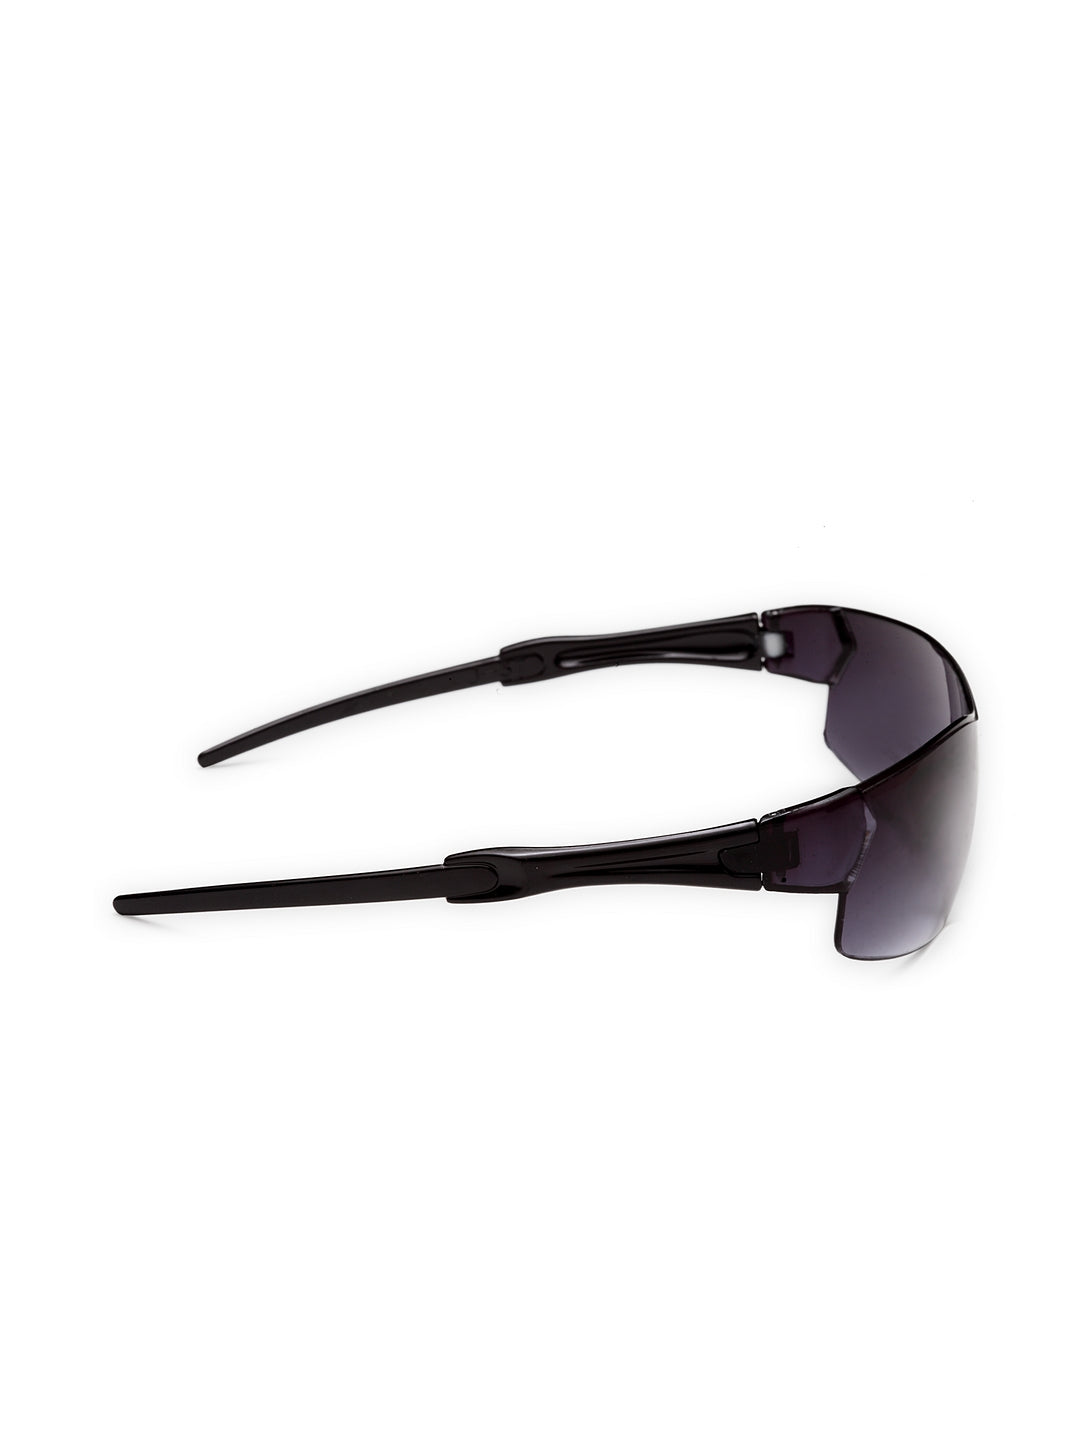 Stol'n  Sunglasses For Kids ( UV Protected) Black